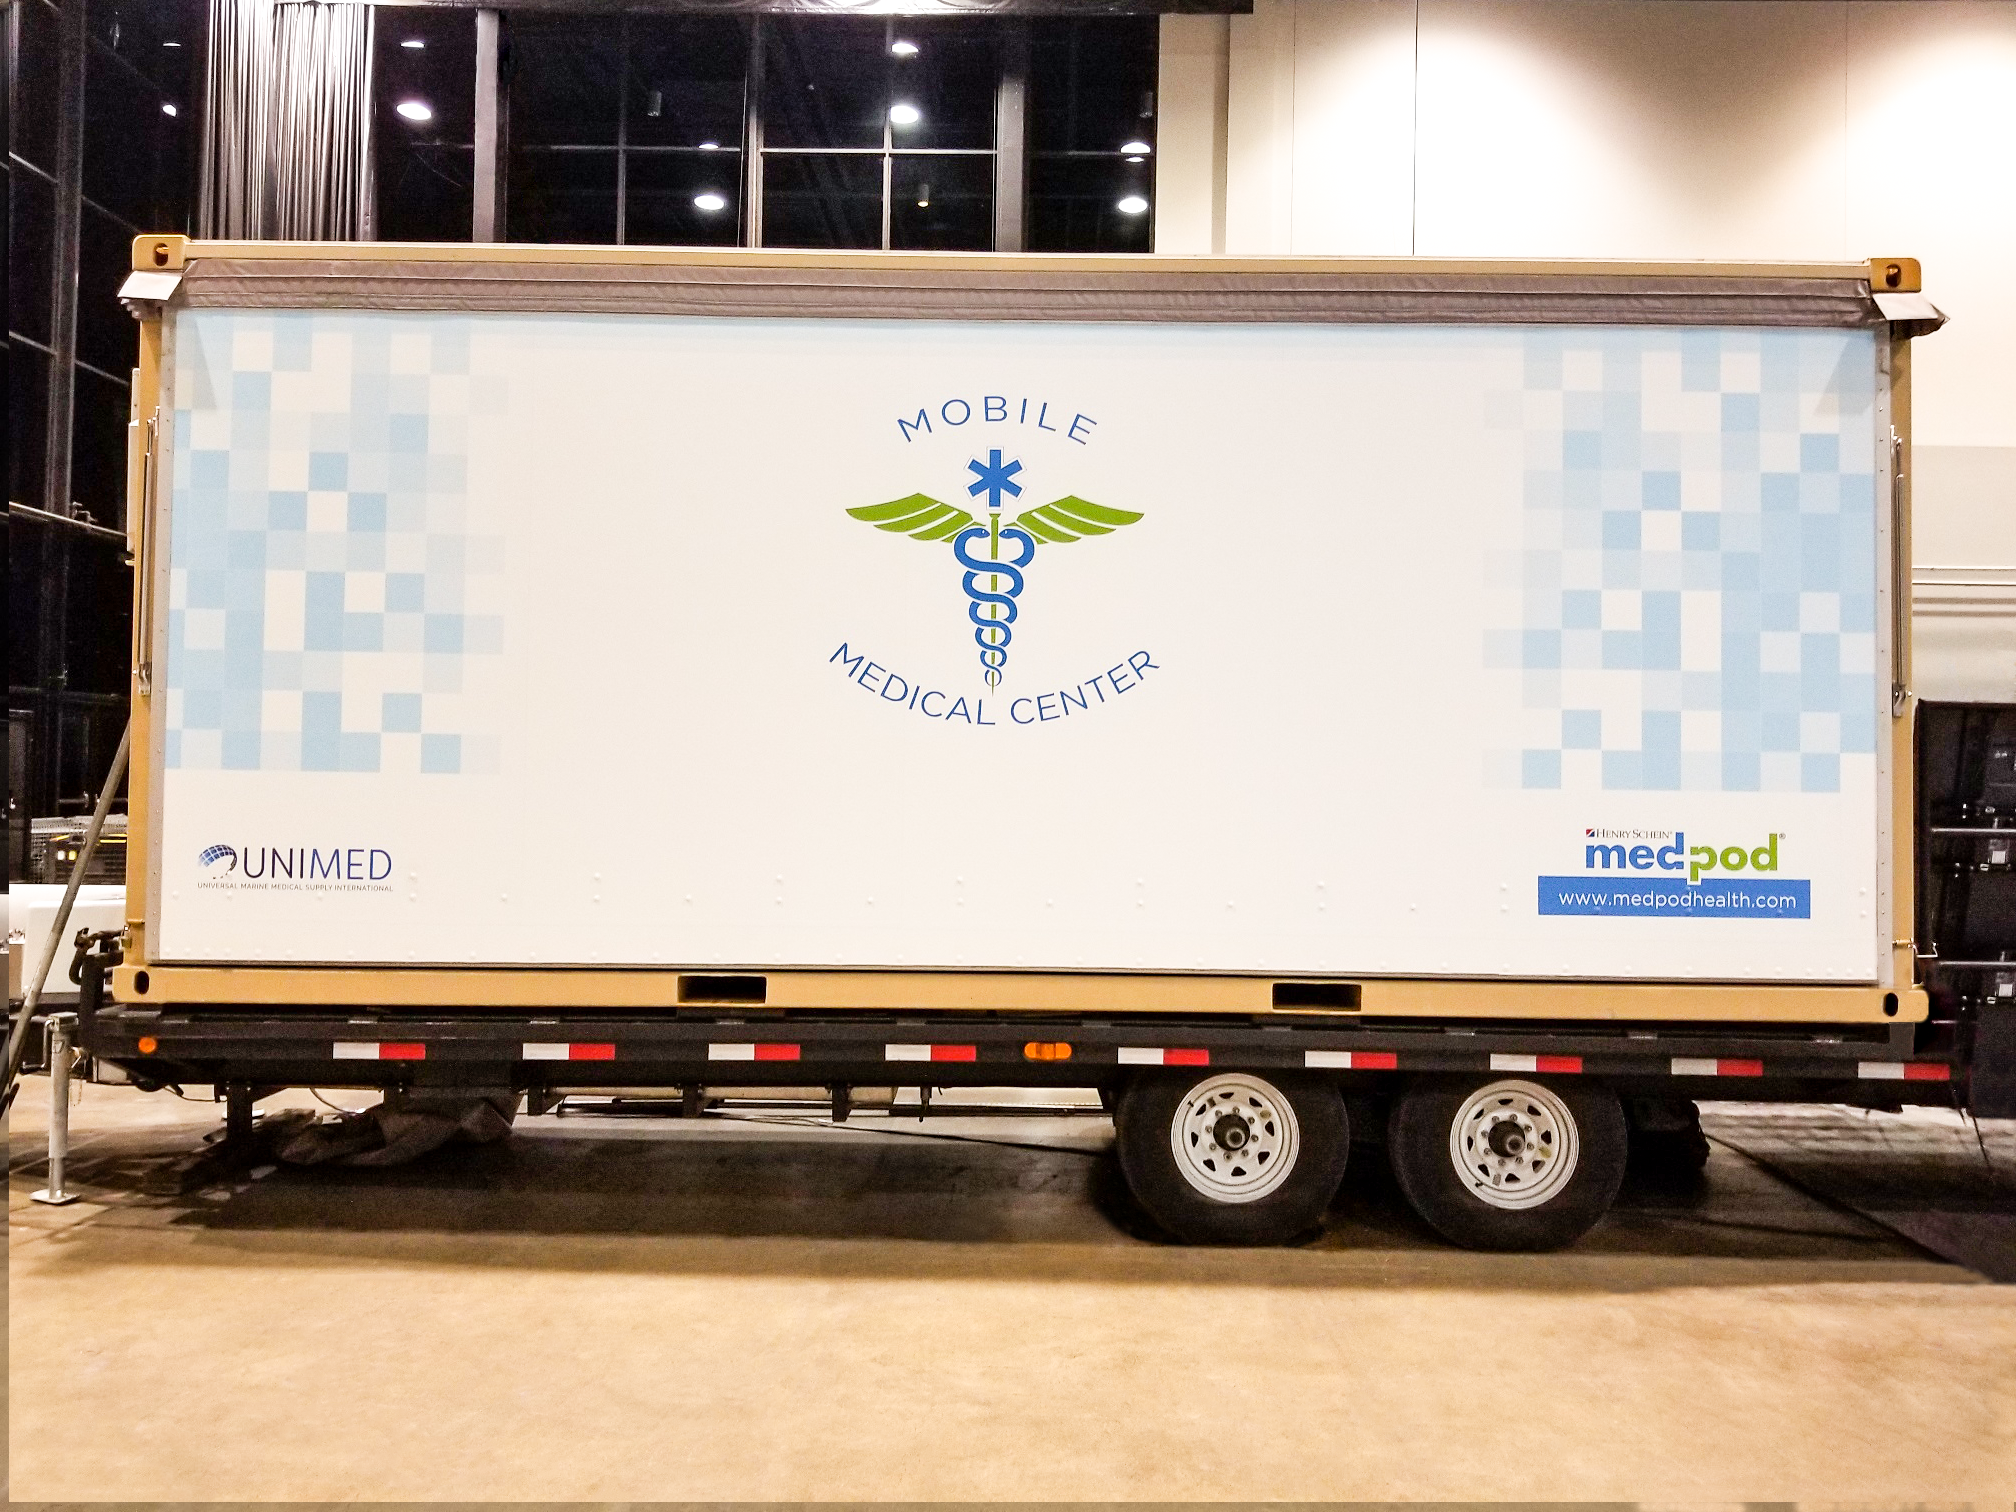 Mobile medical center custom wrapped trailer. 